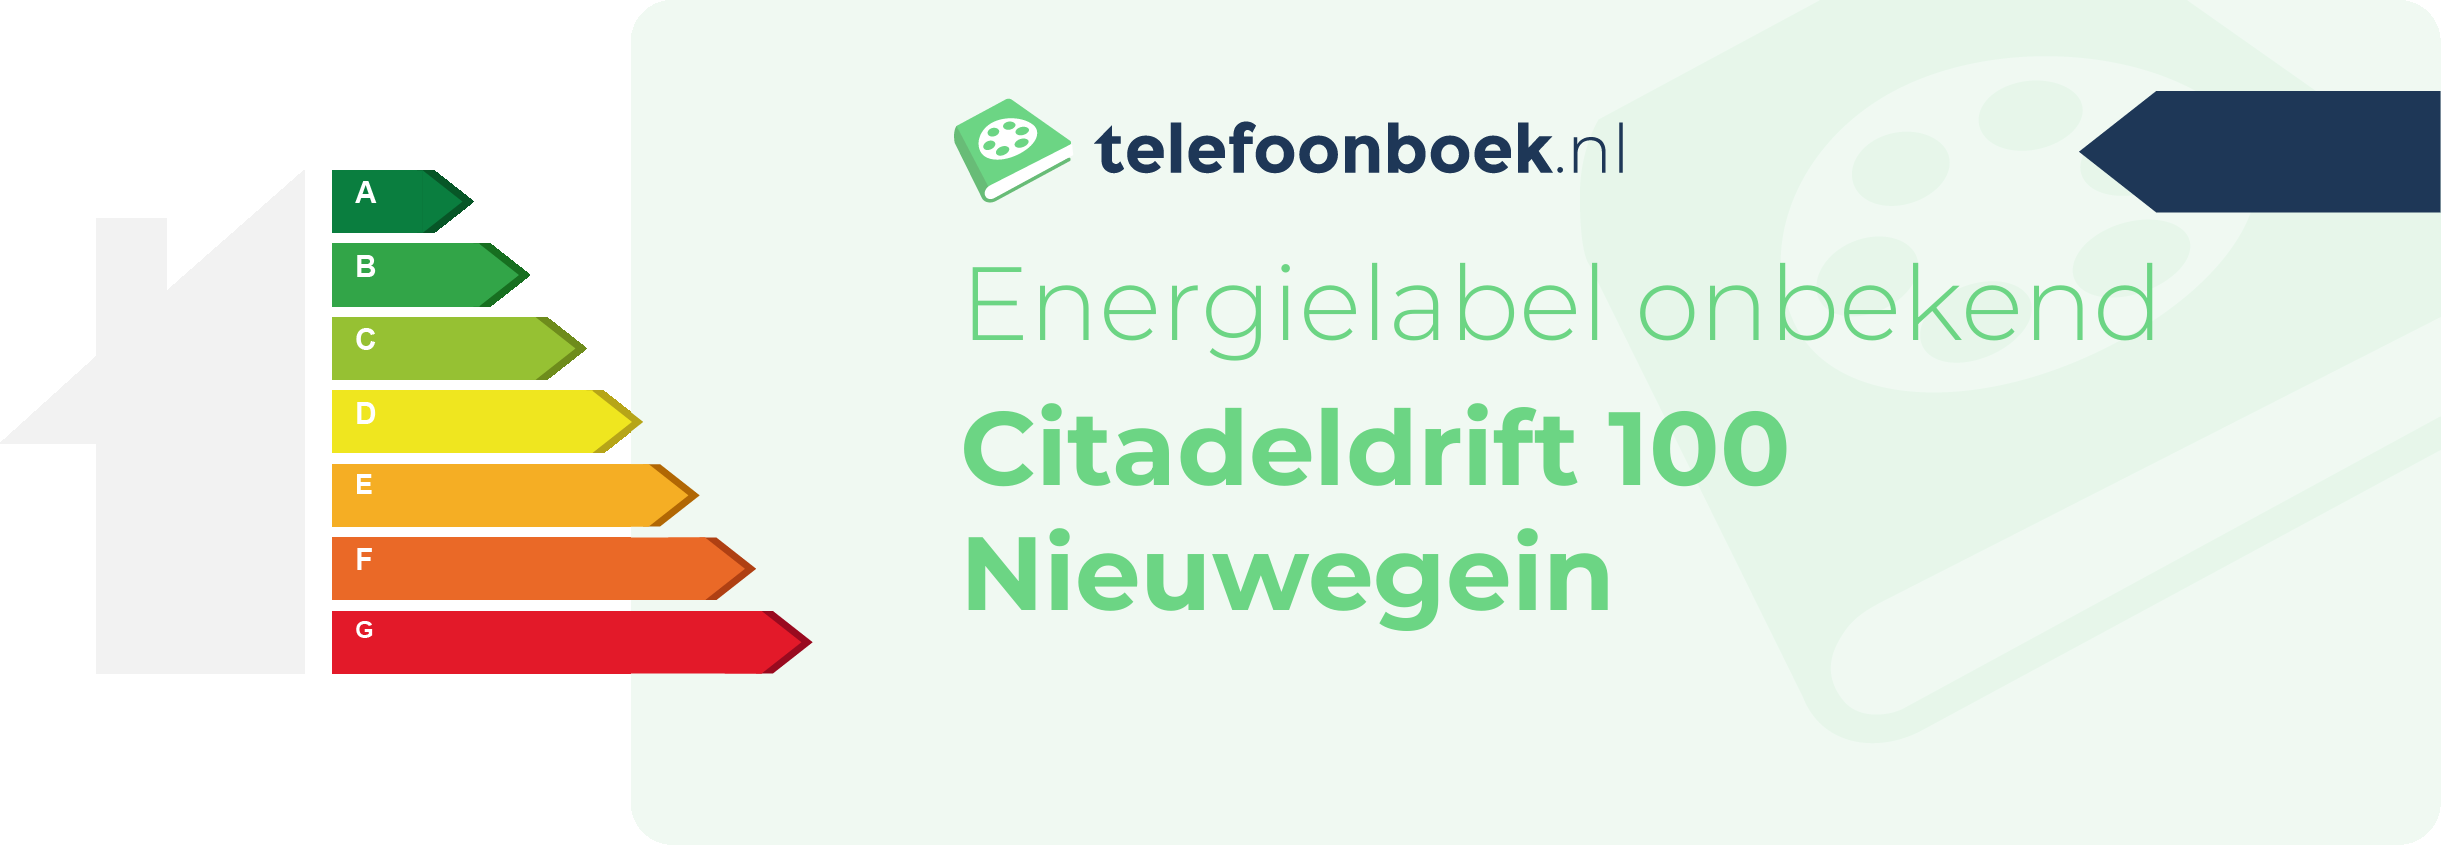 Energielabel Citadeldrift 100 Nieuwegein